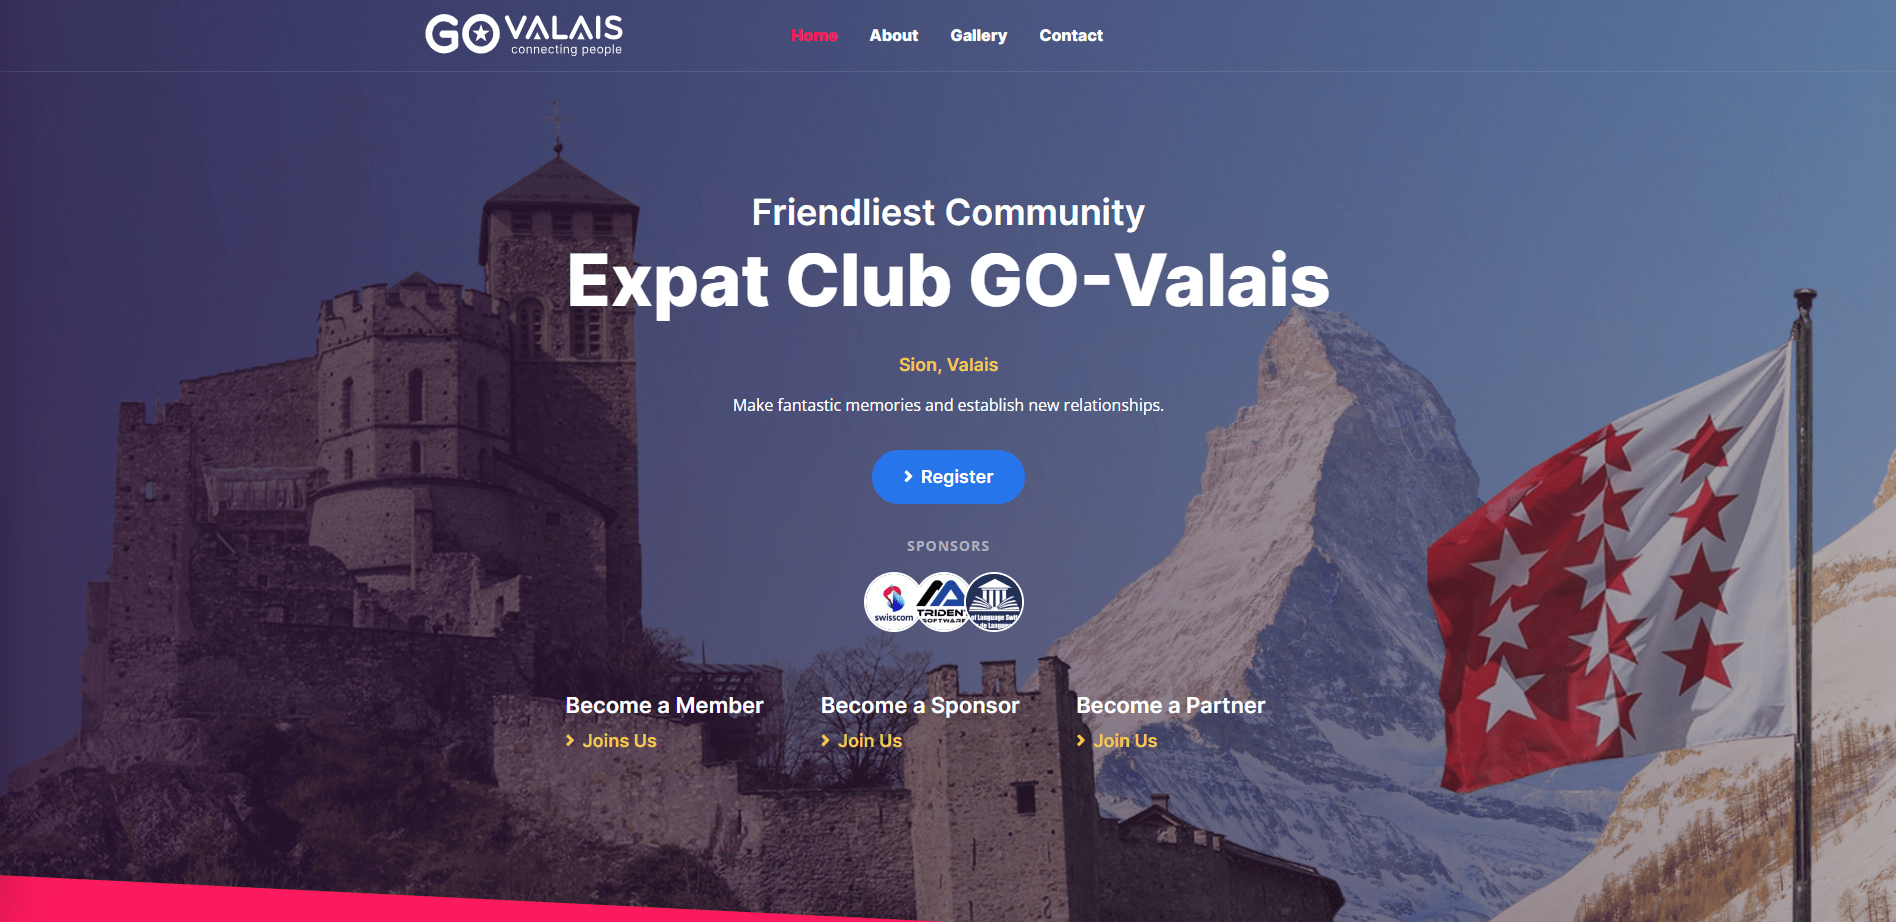 GO-Valais Expat club website